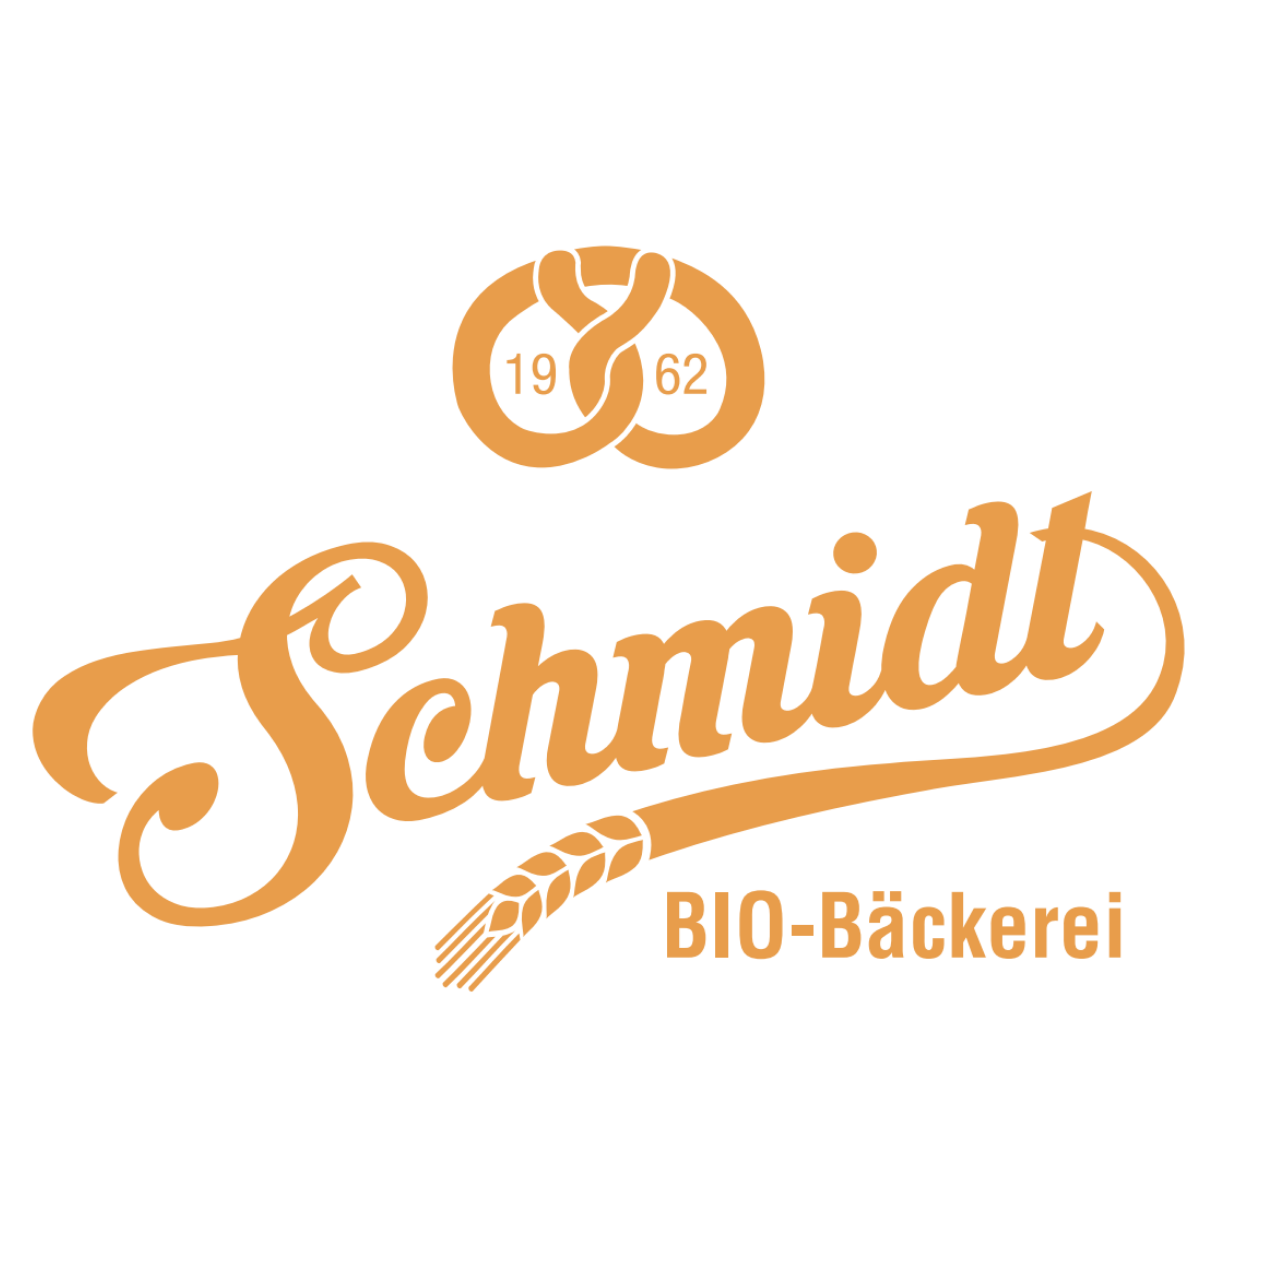 Biobäckerei Schmidt